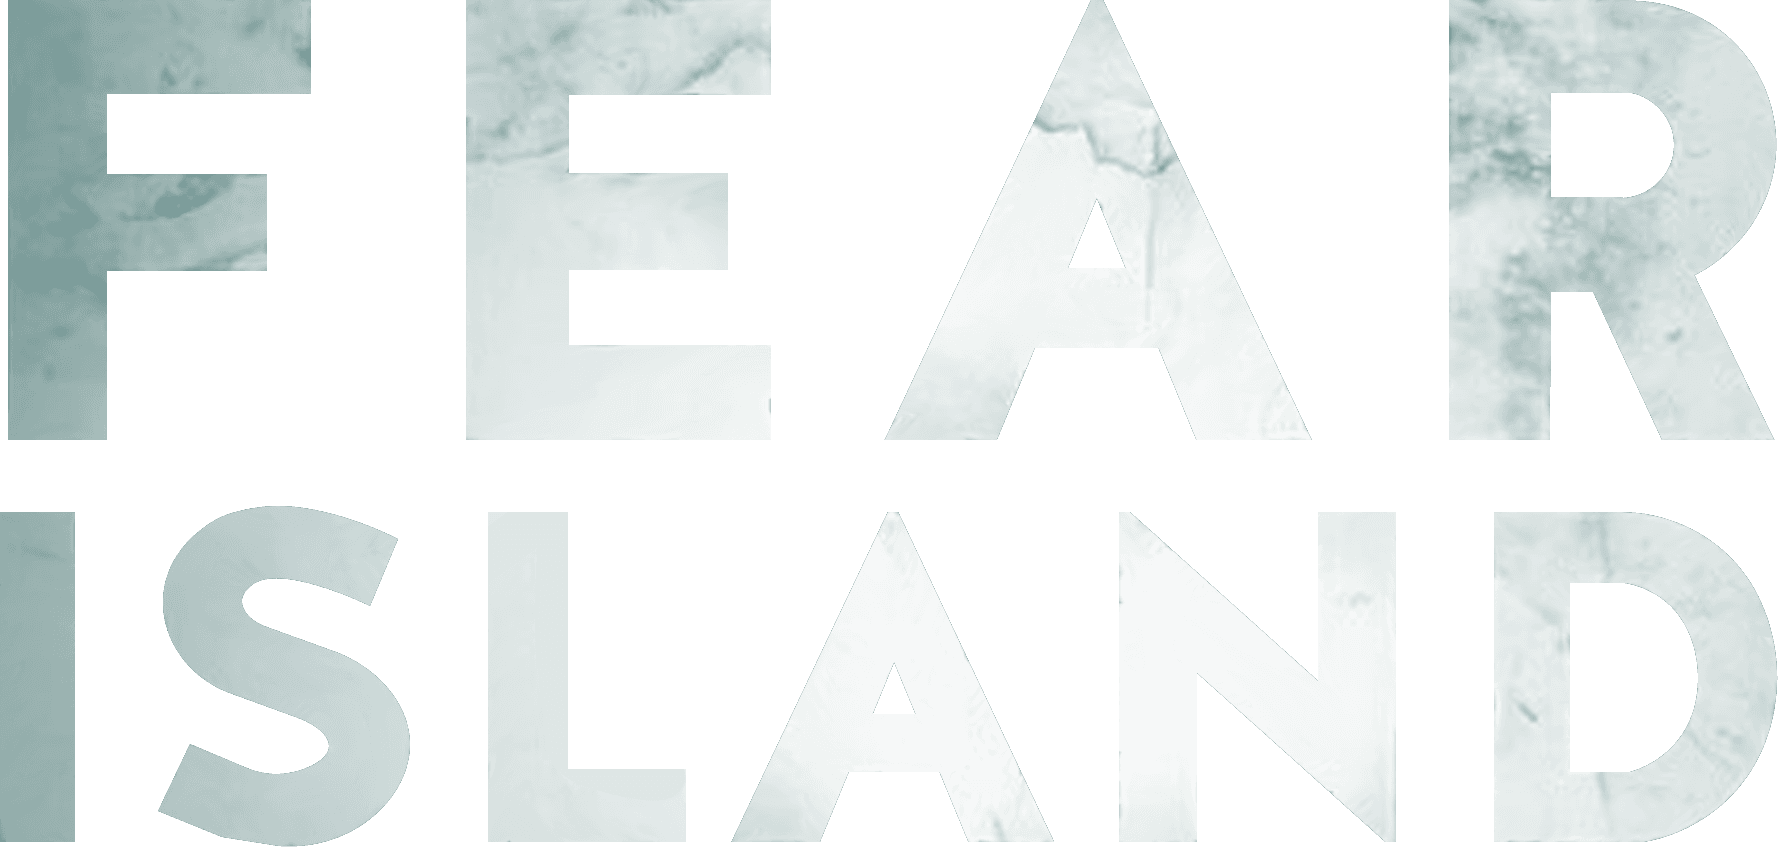 Fear Island logo